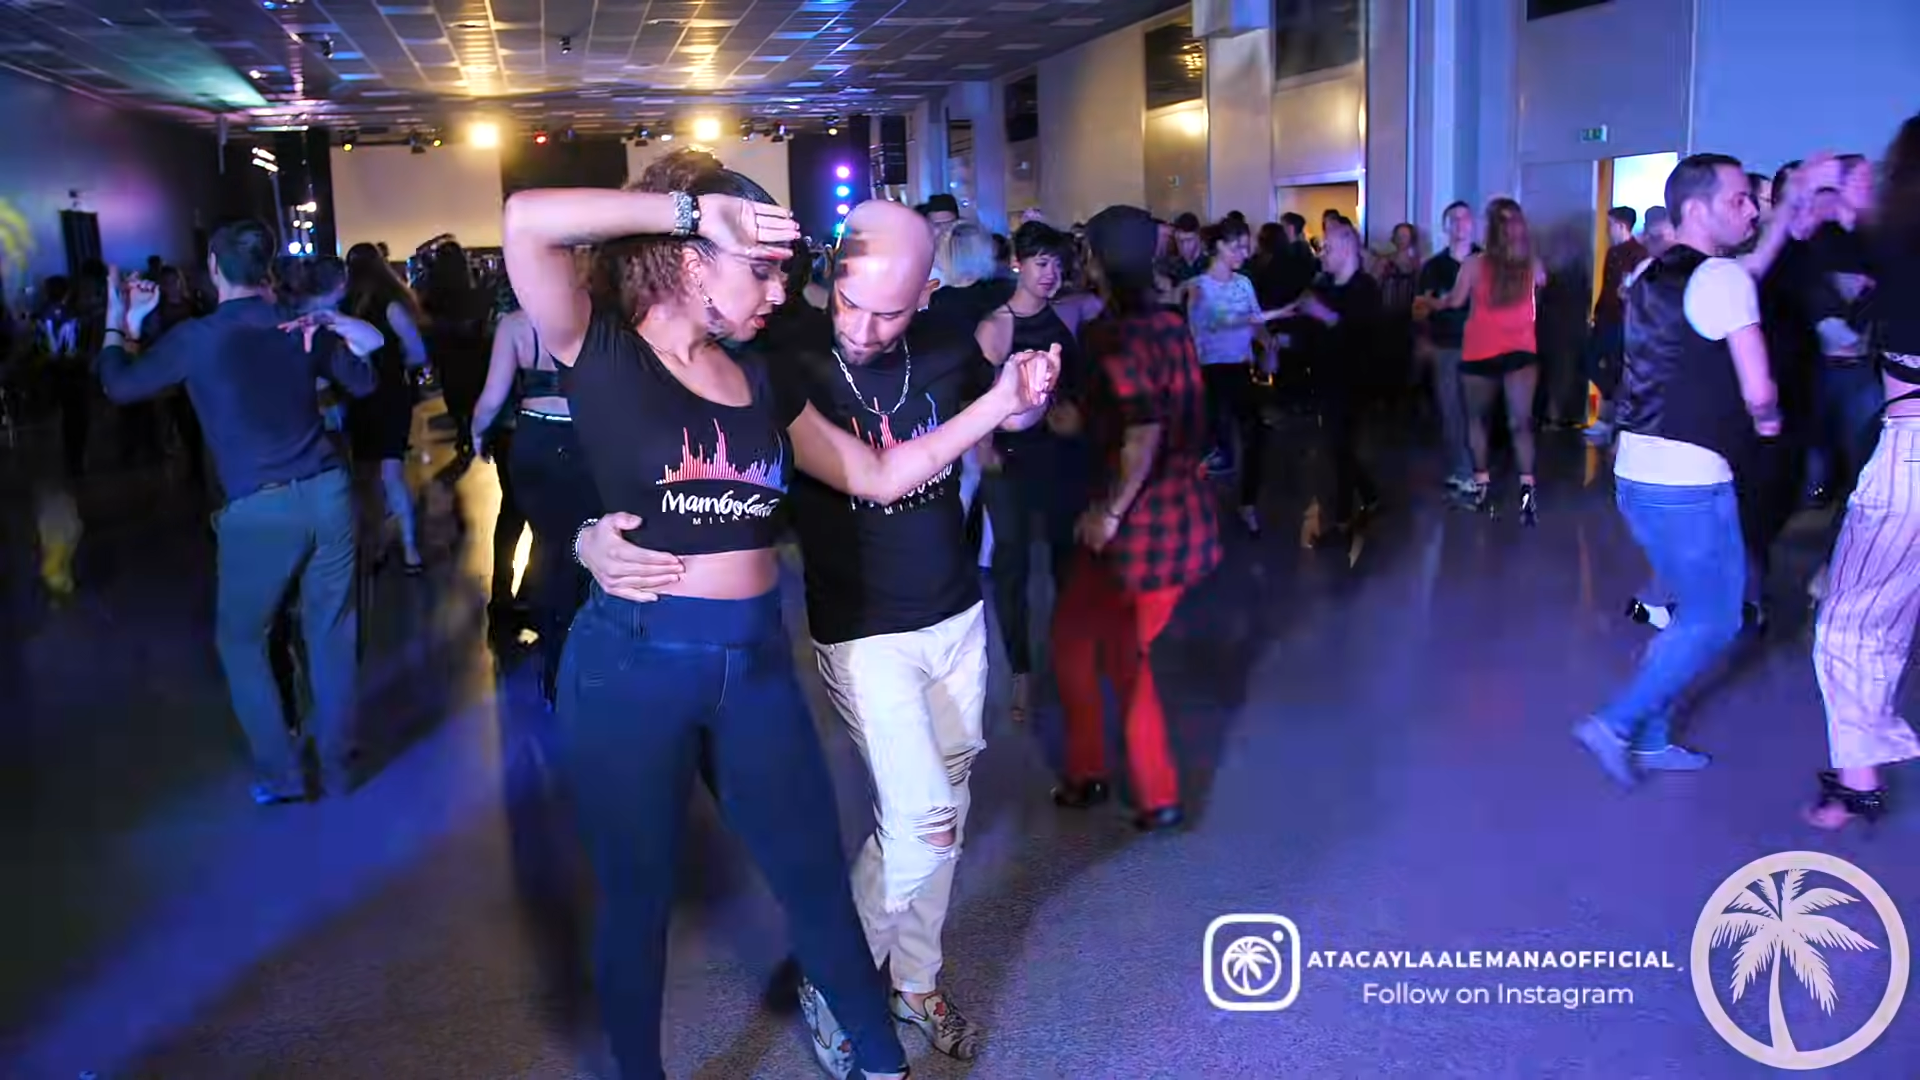 Puerto Rico Salsa Dance - Ataca y Alemana